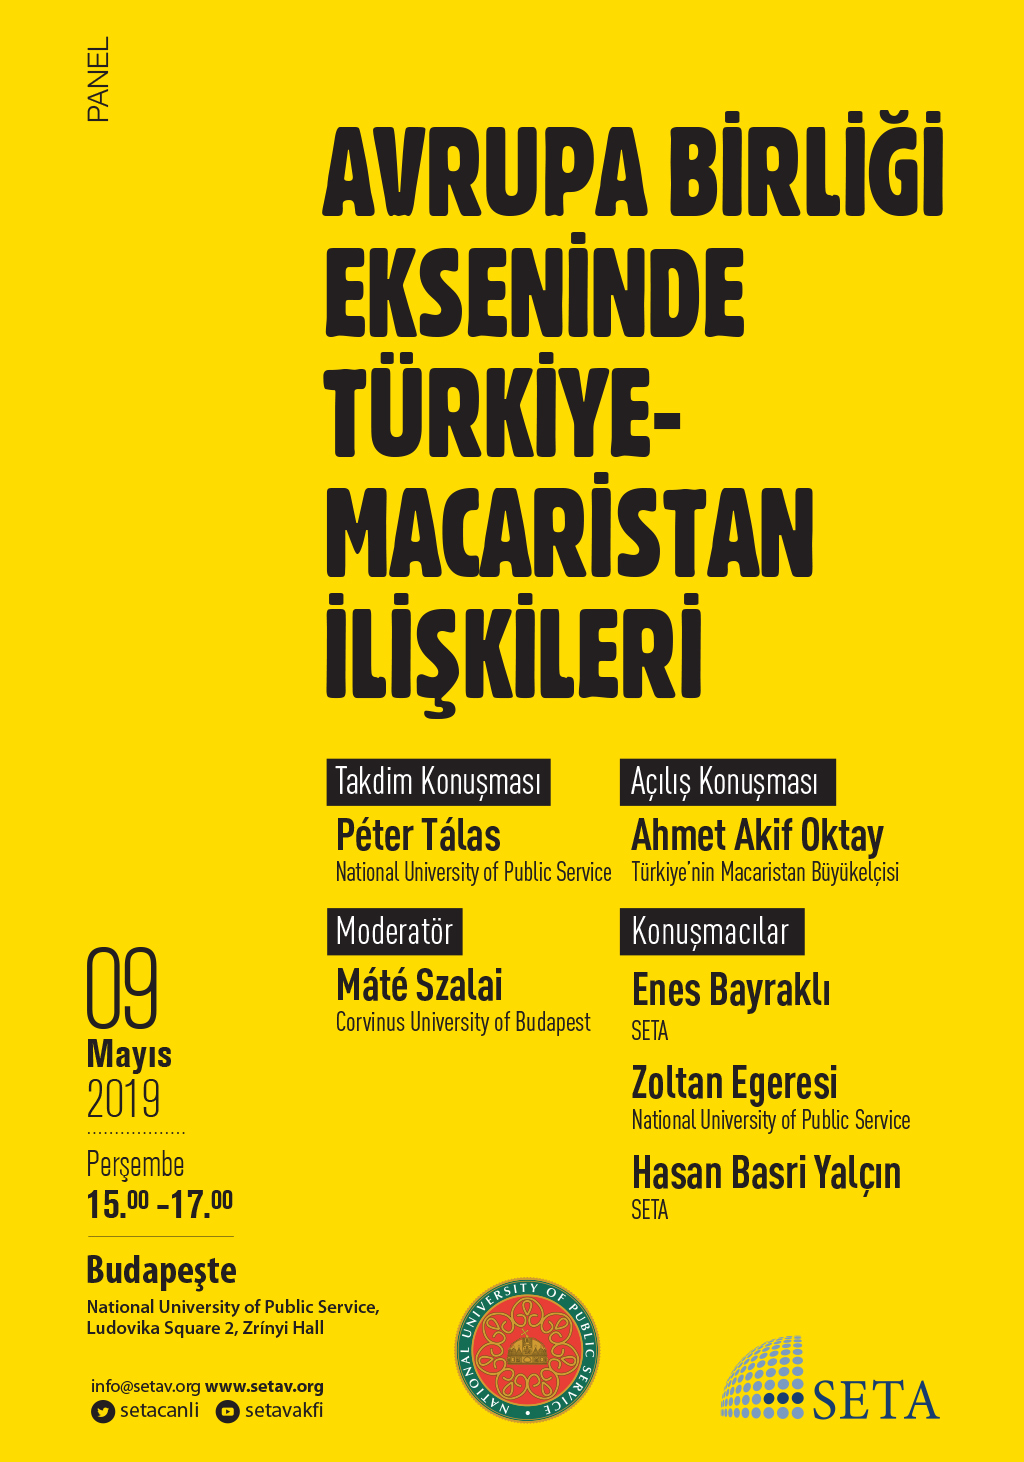 Panel: Avrupa Birliği Ekseninde Türkiye-Macaristan İlişkileri